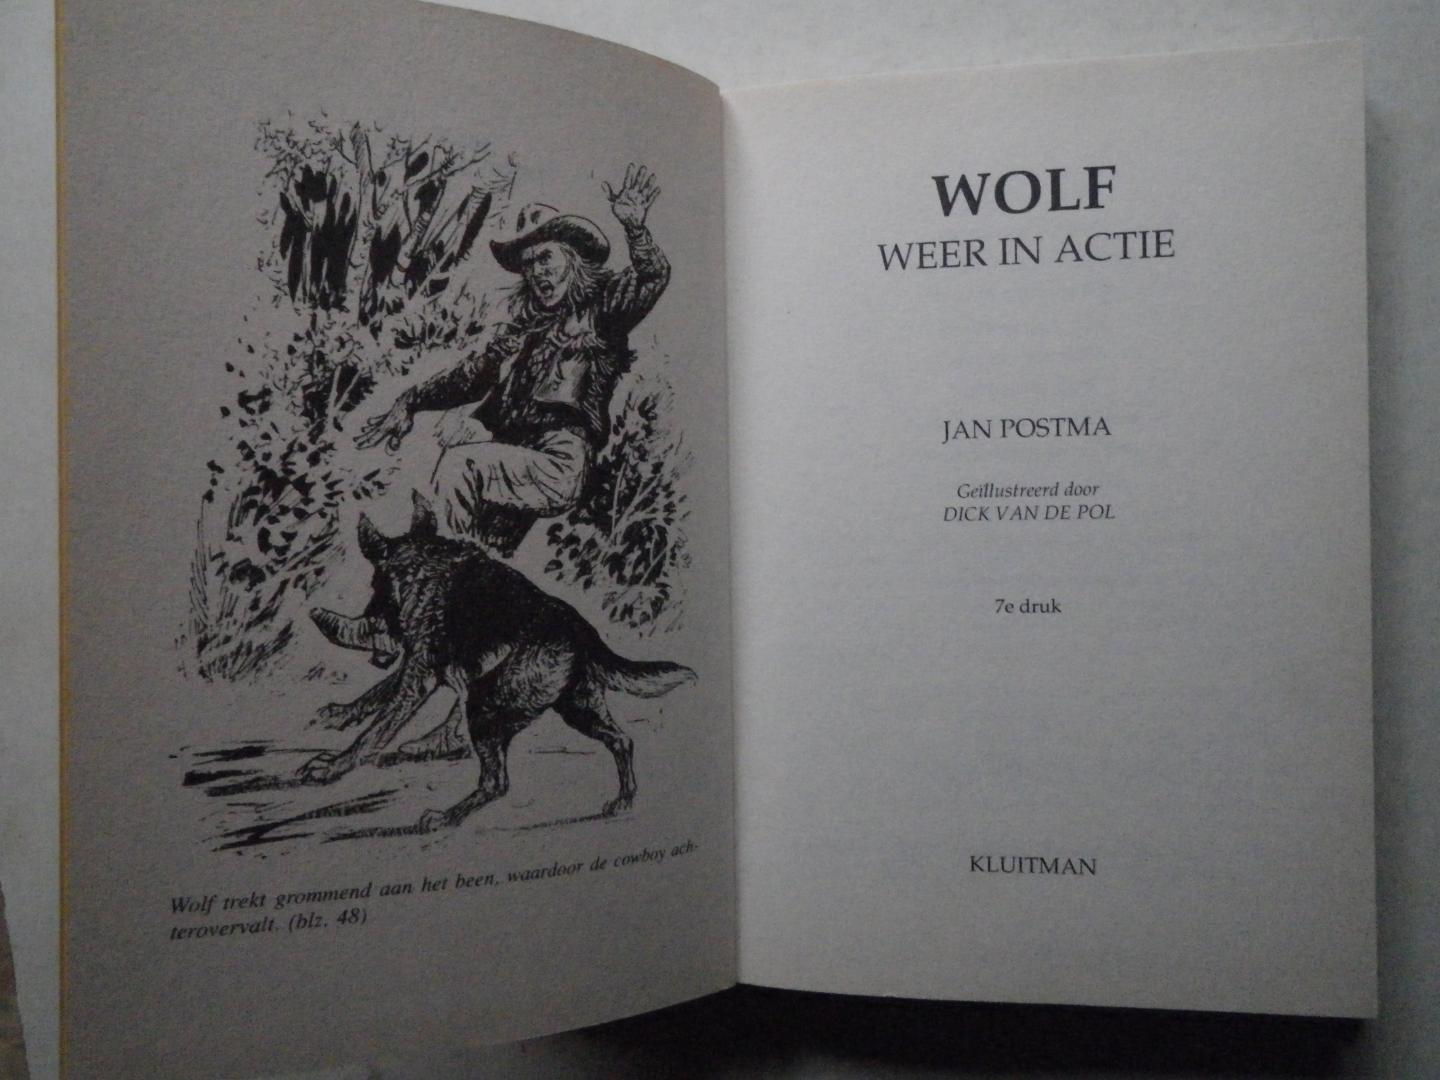 Postma, Jan - Wolf weer in actie (dl. 9 uit de Wolfserie)